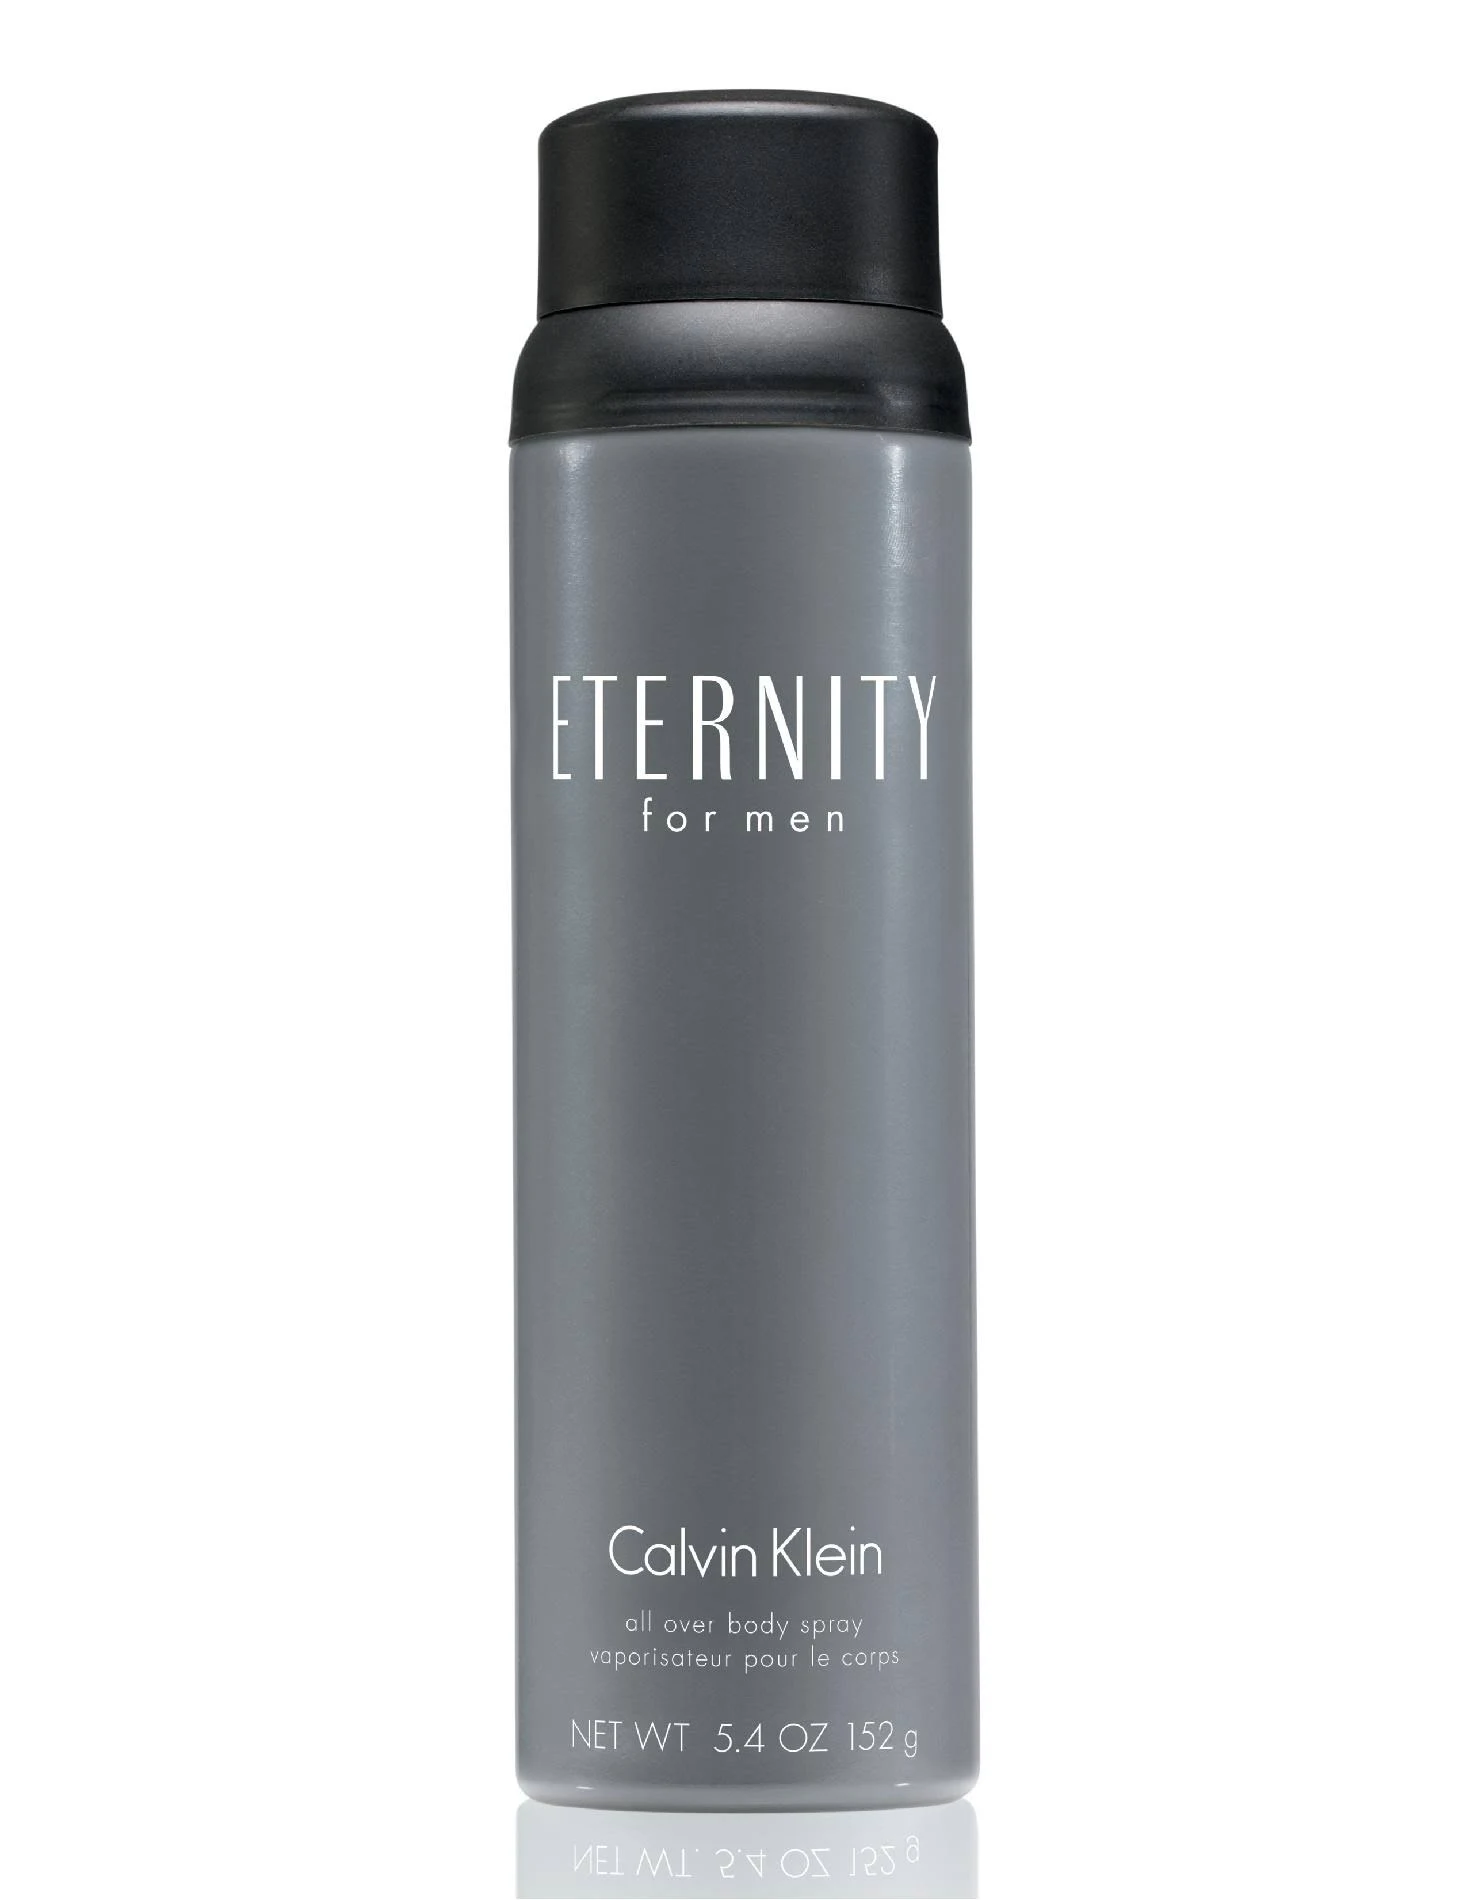 Photos - Women's Fragrance Calvin Klein Eternity Body Spray For Men 